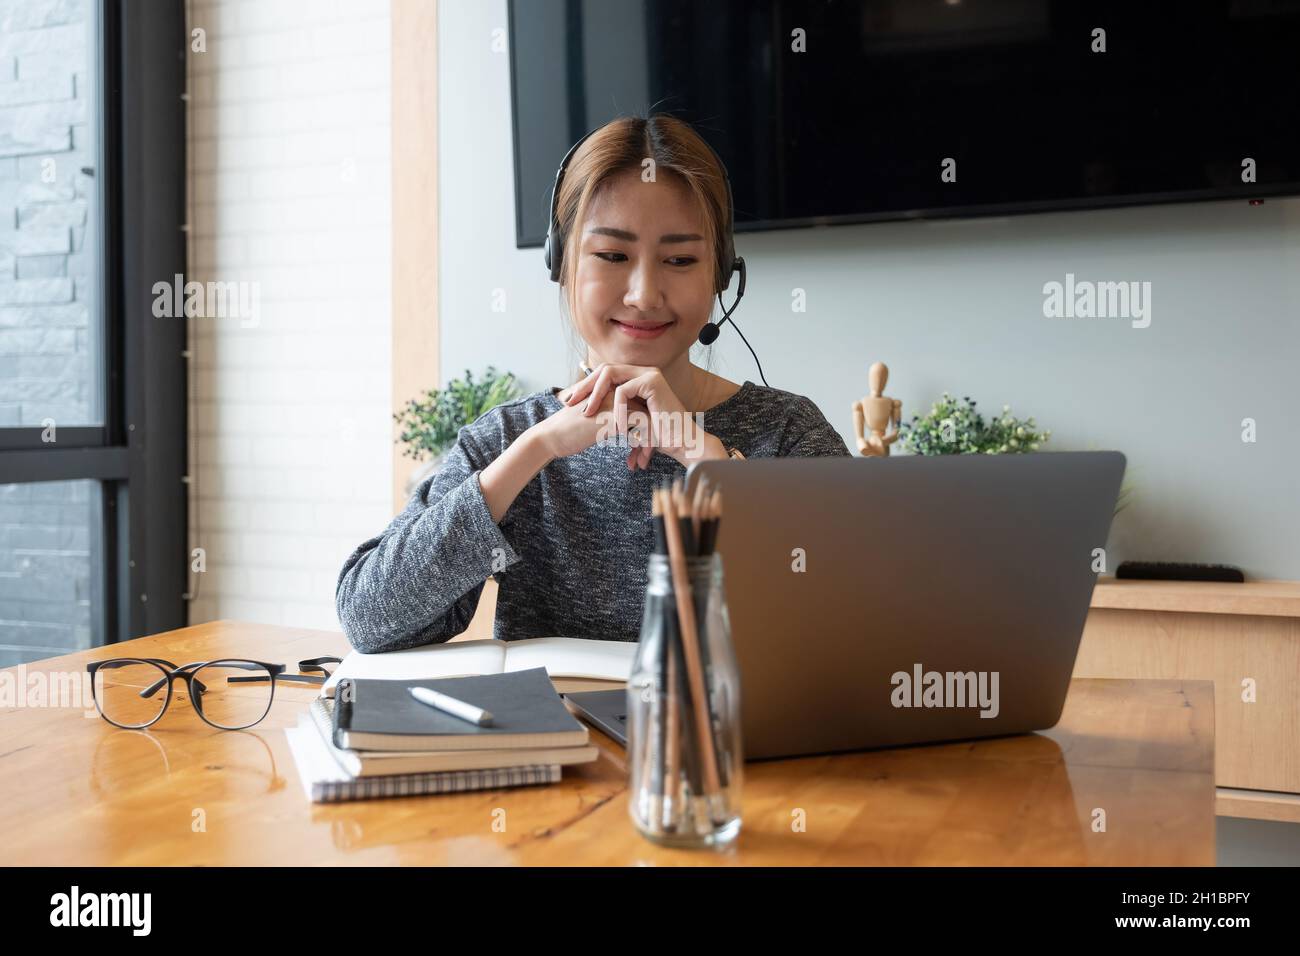 Prise de vue rognée femme asiatique souriante freelancer portant un casque, communiquant avec le client via un appel vidéo sur ordinateur.Professionnel agréable millénaire Banque D'Images